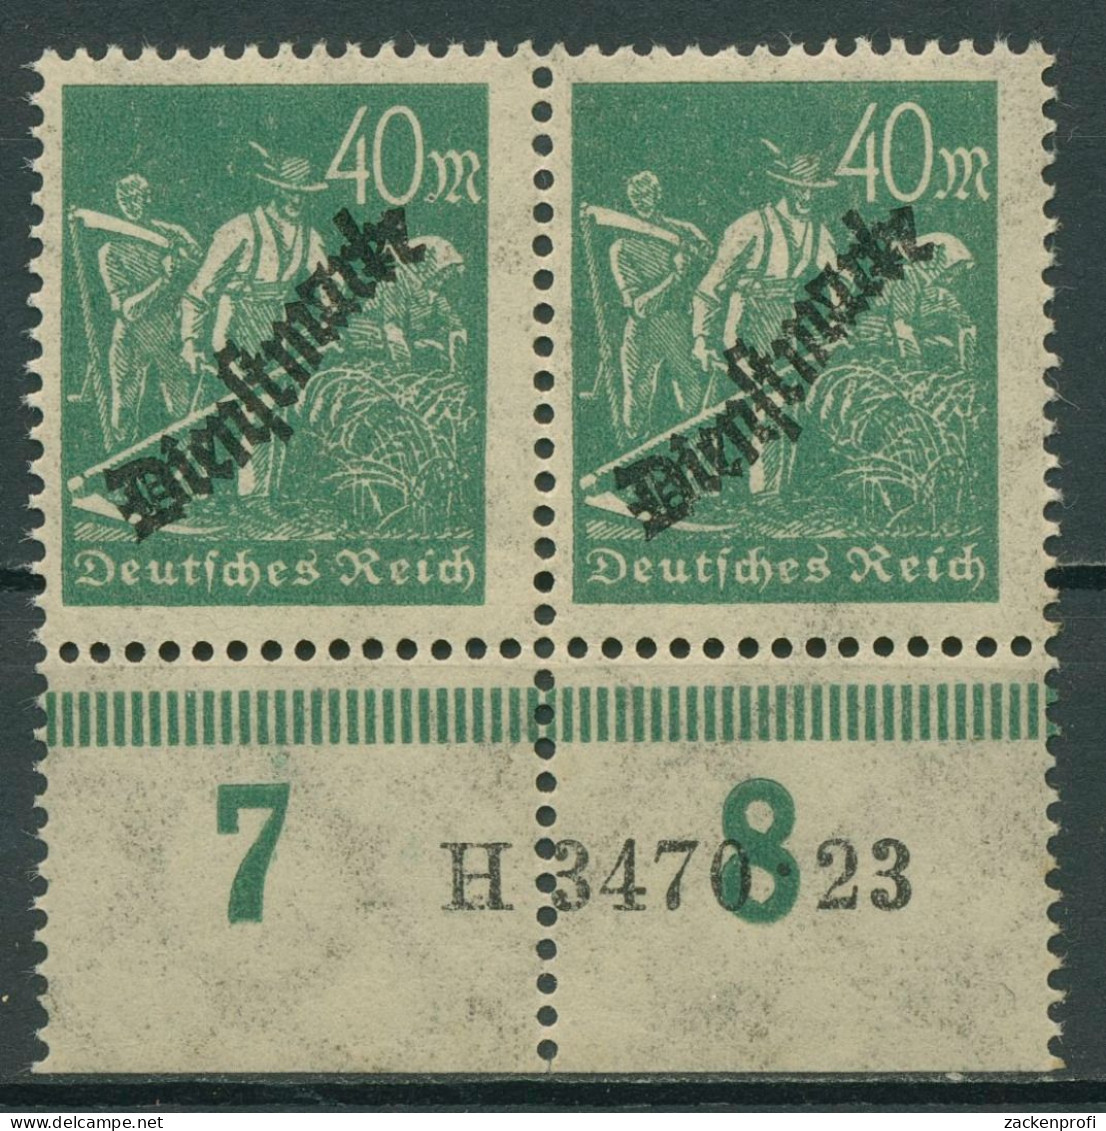 Deutsches Reich Dienstmarke 1923 Hausauftrags-Nr. D 77 A HAN 3470.23 Postfrisch - Service